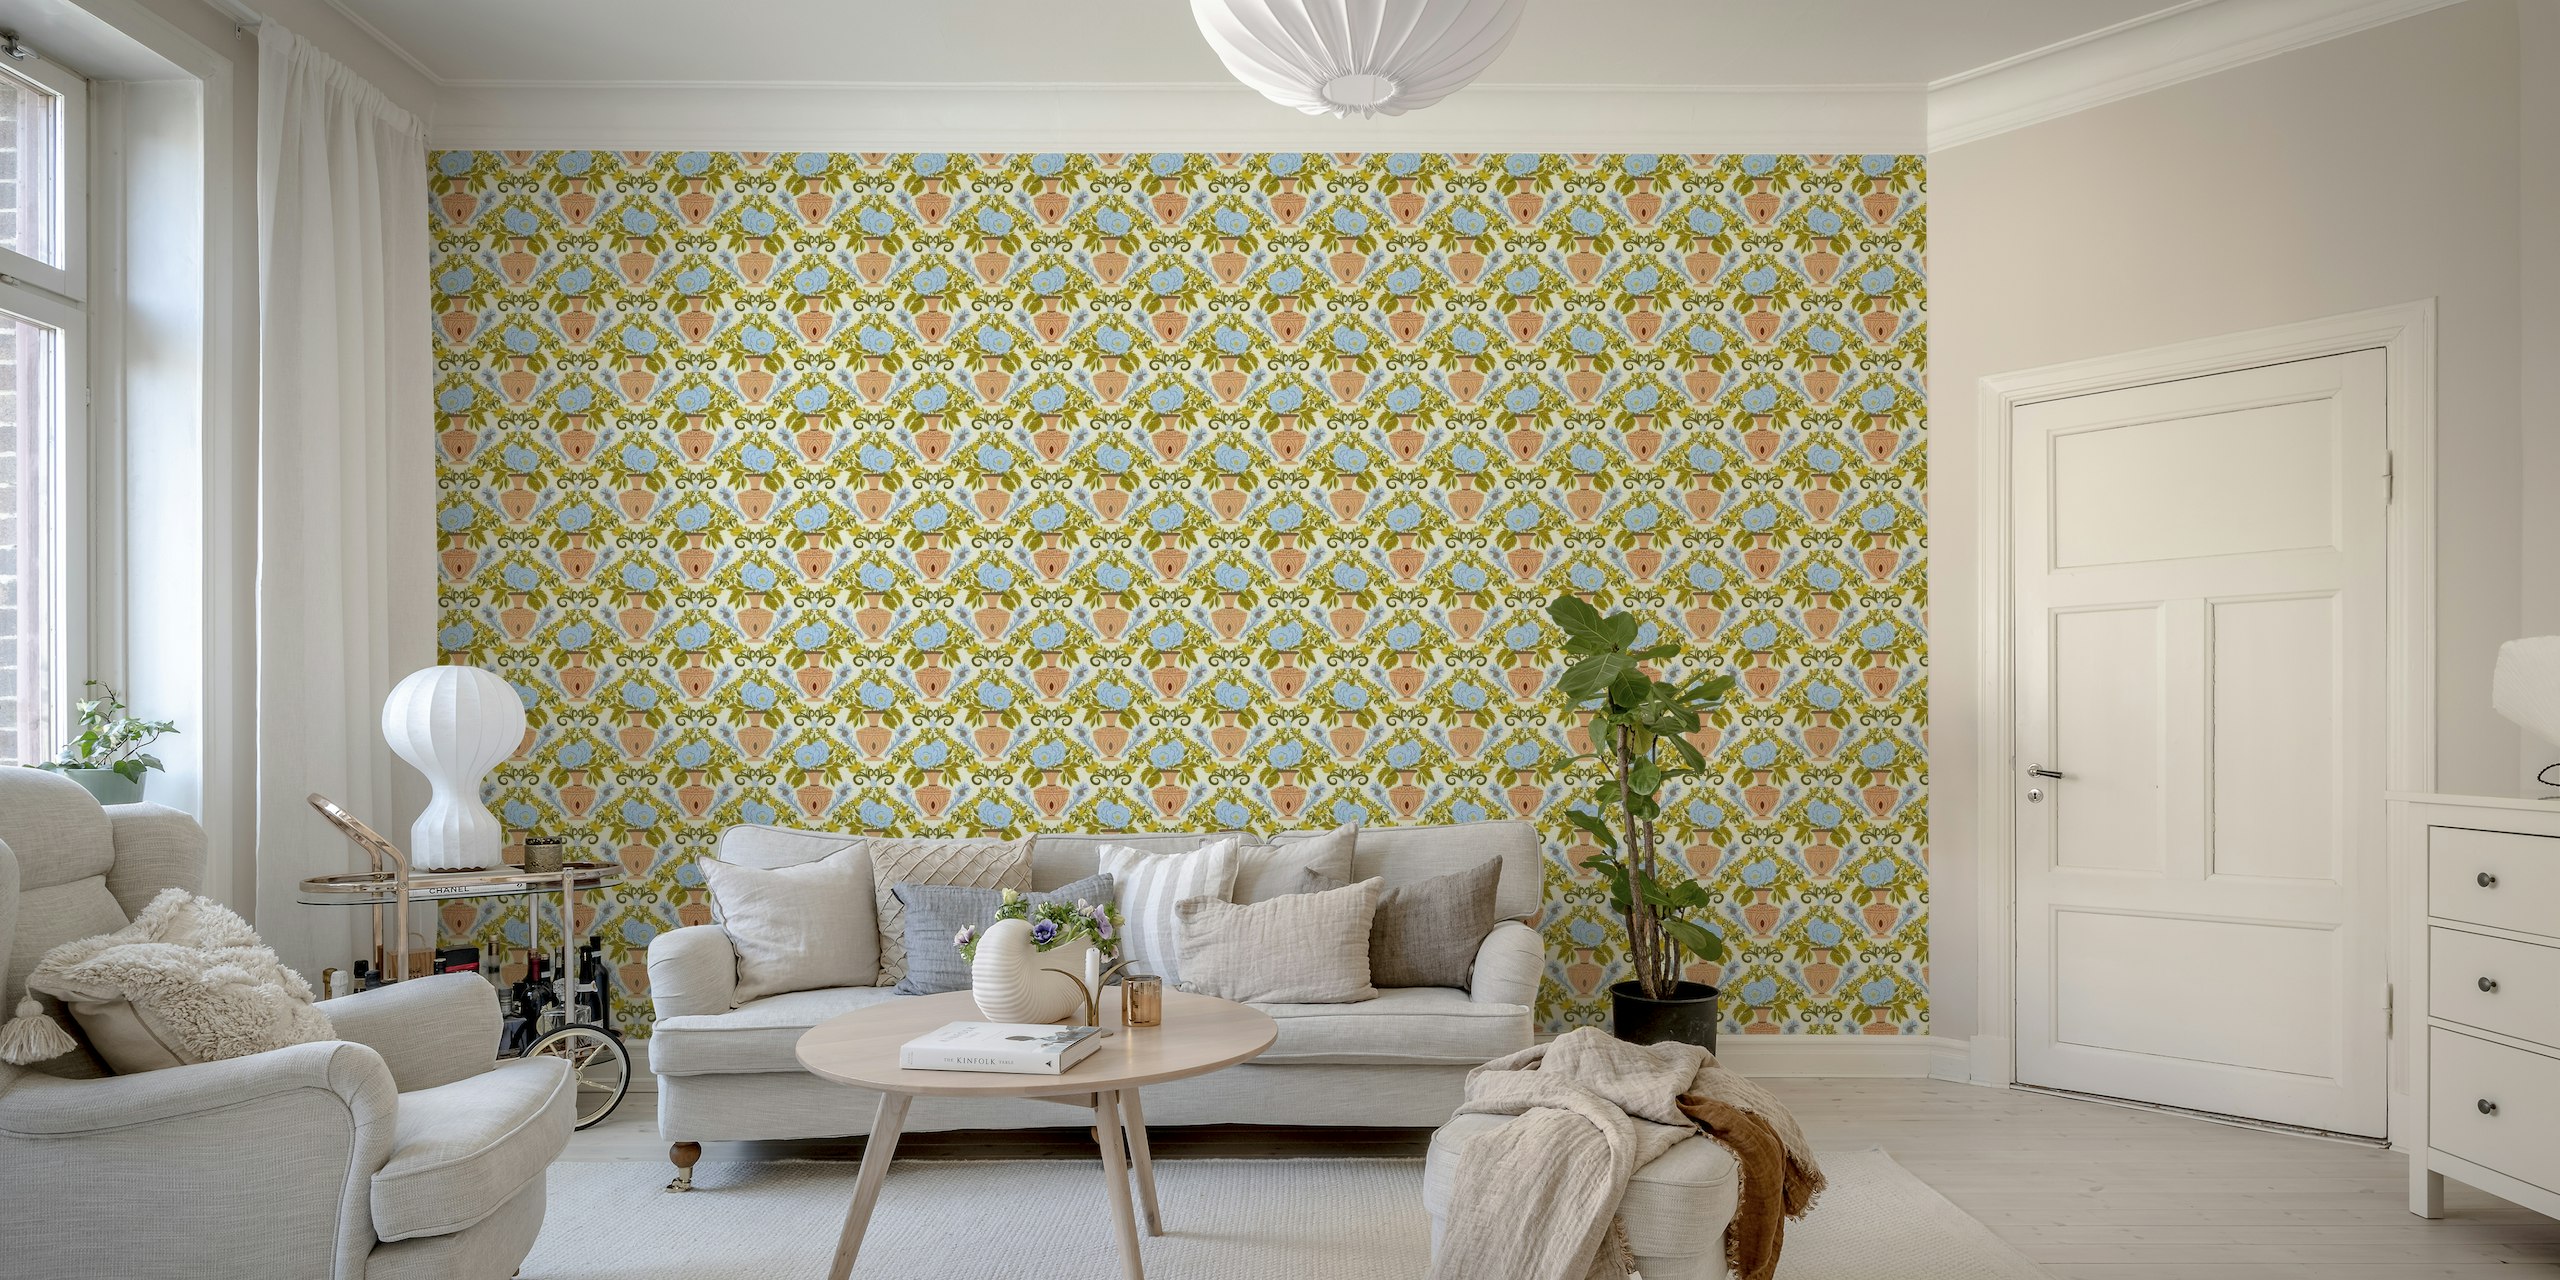 Italian Villa Wallpaper with citrus fruits ταπετσαρία